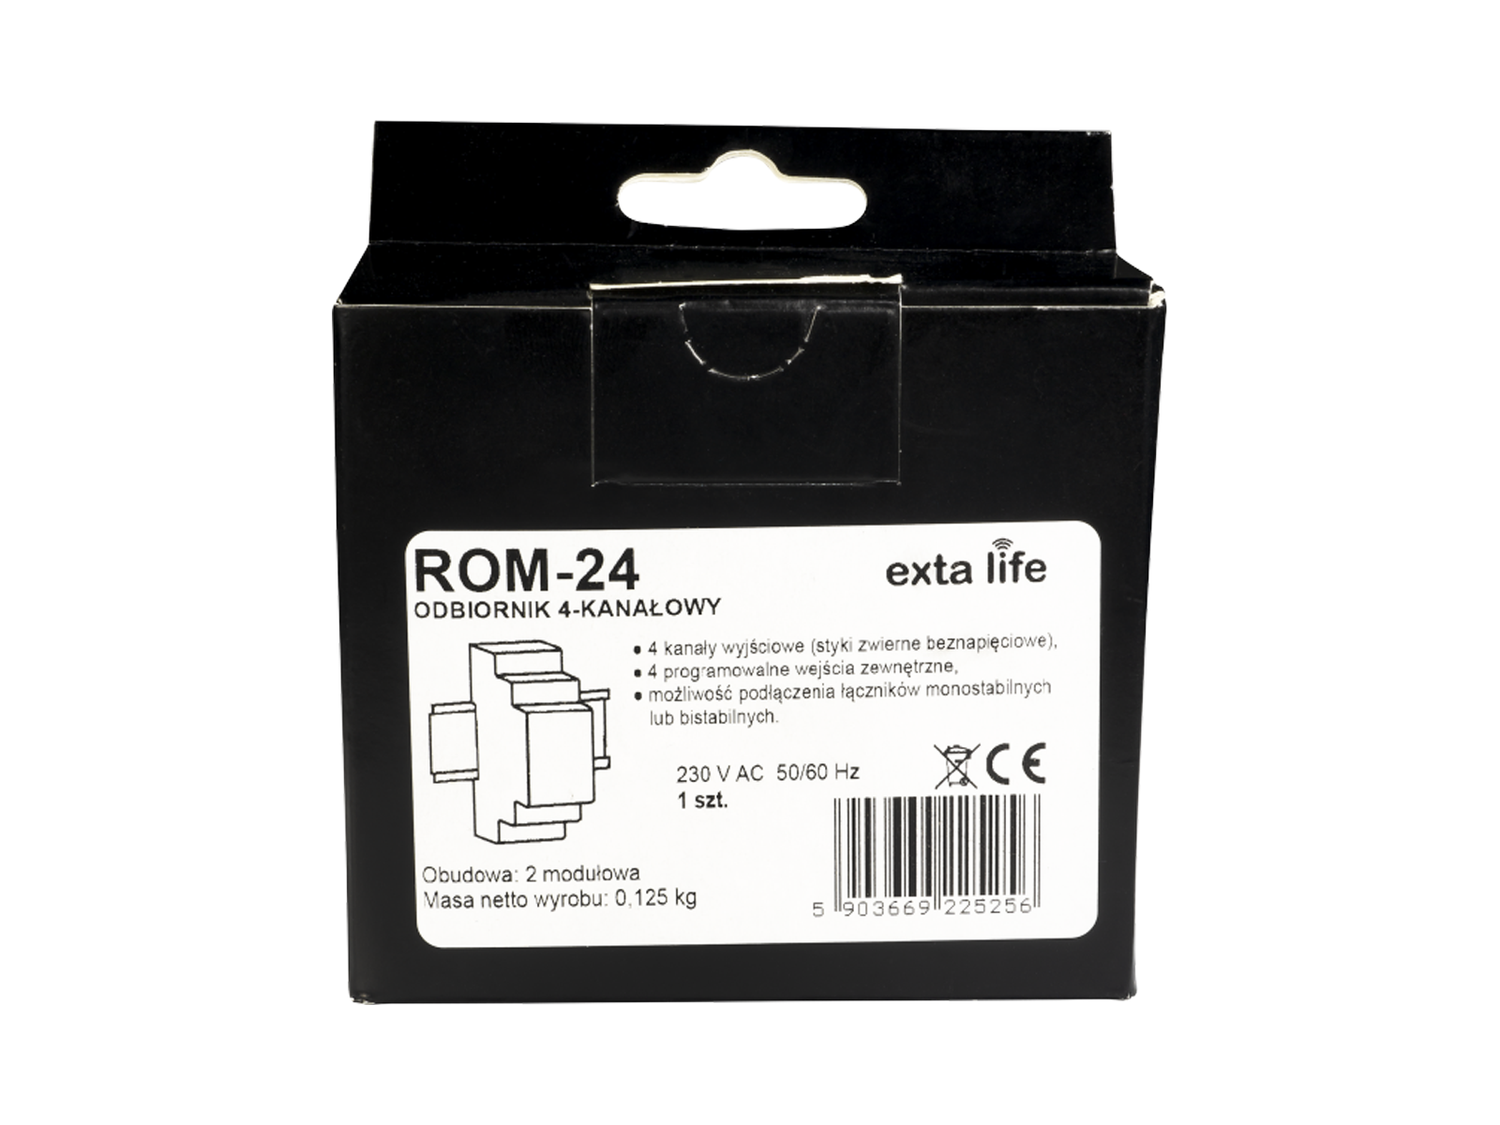 Rádiový přijímač ROM-24, 4-kanálový modulový